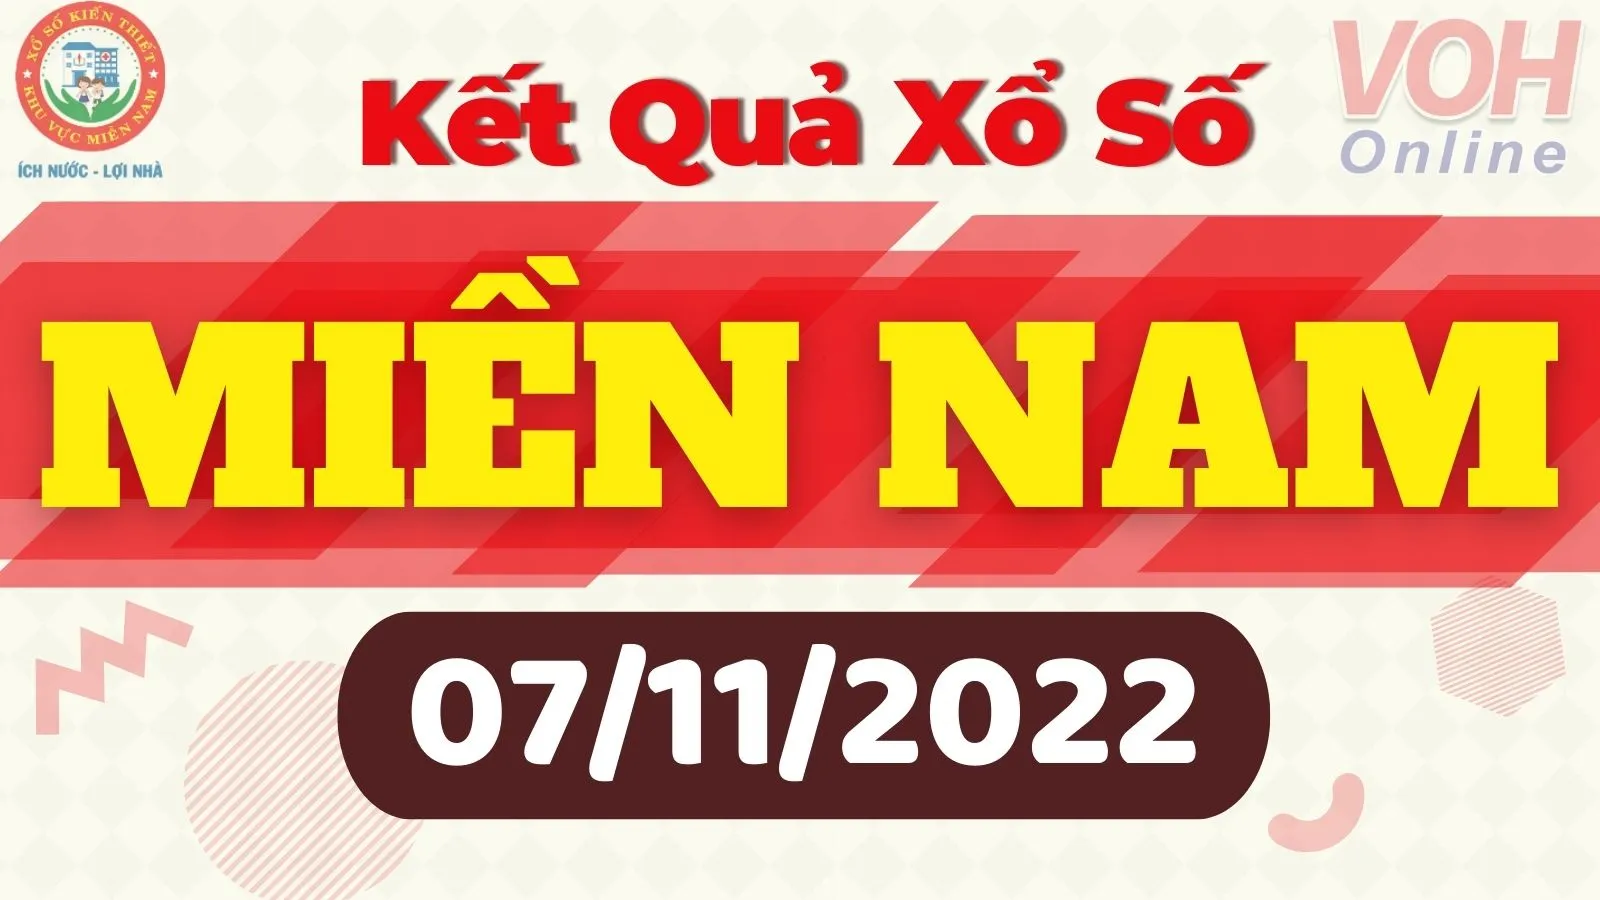 Xổ số miền Nam hôm nay - XSMN 7/11 - SXMN 7/11/2022 - Kết quả xổ số hôm nay ngày 7 tháng 11